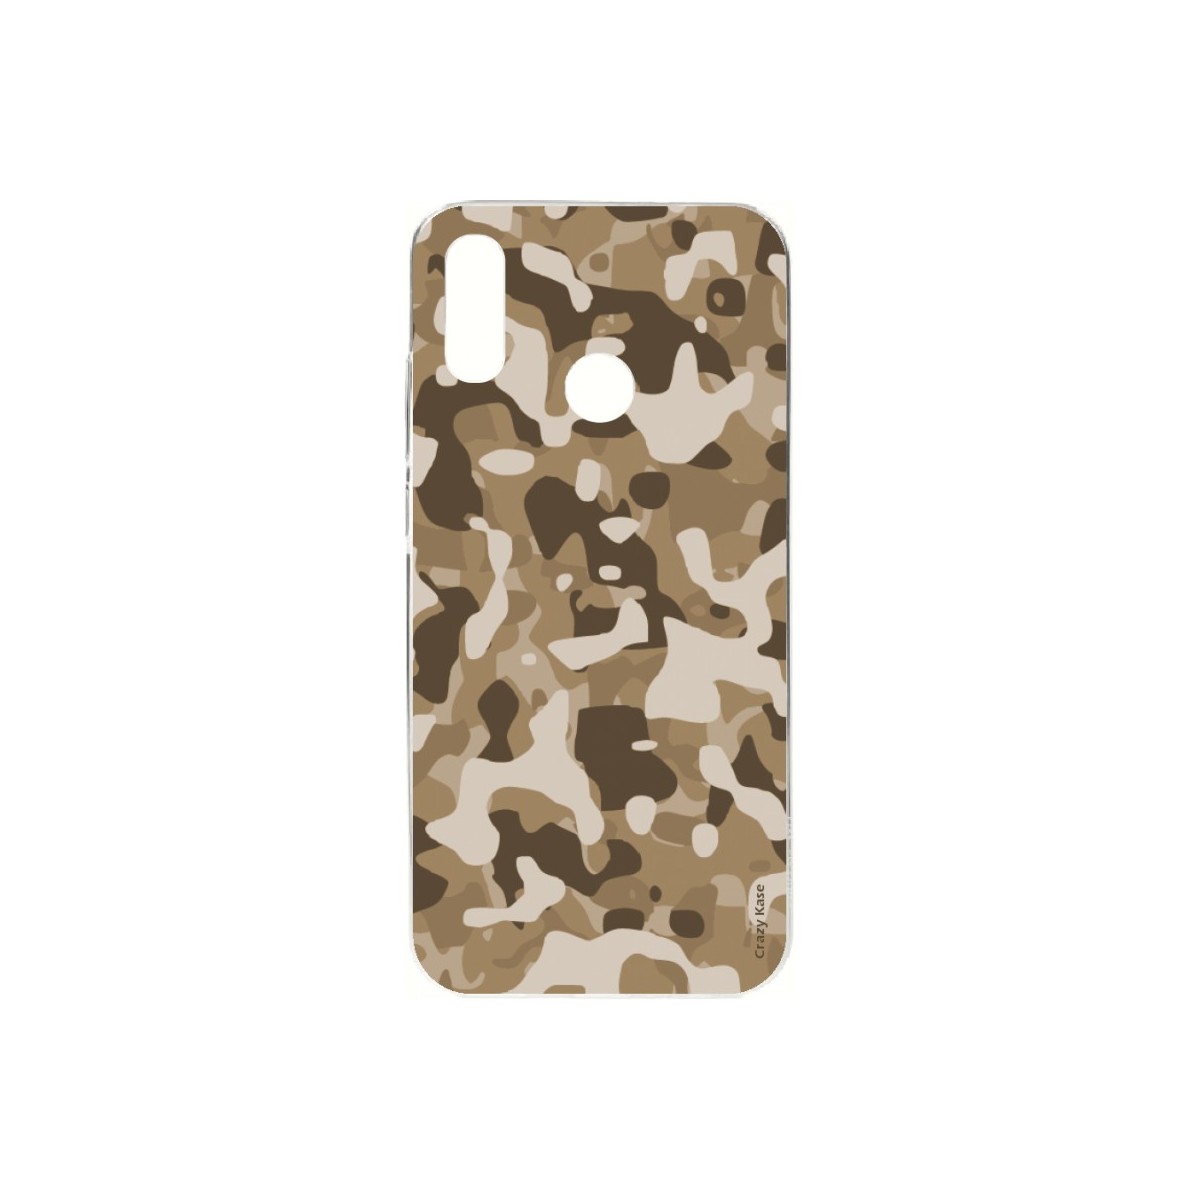 Coque Huawei P Smart 2019 souple Camouflage militaire désert Crazy Kase